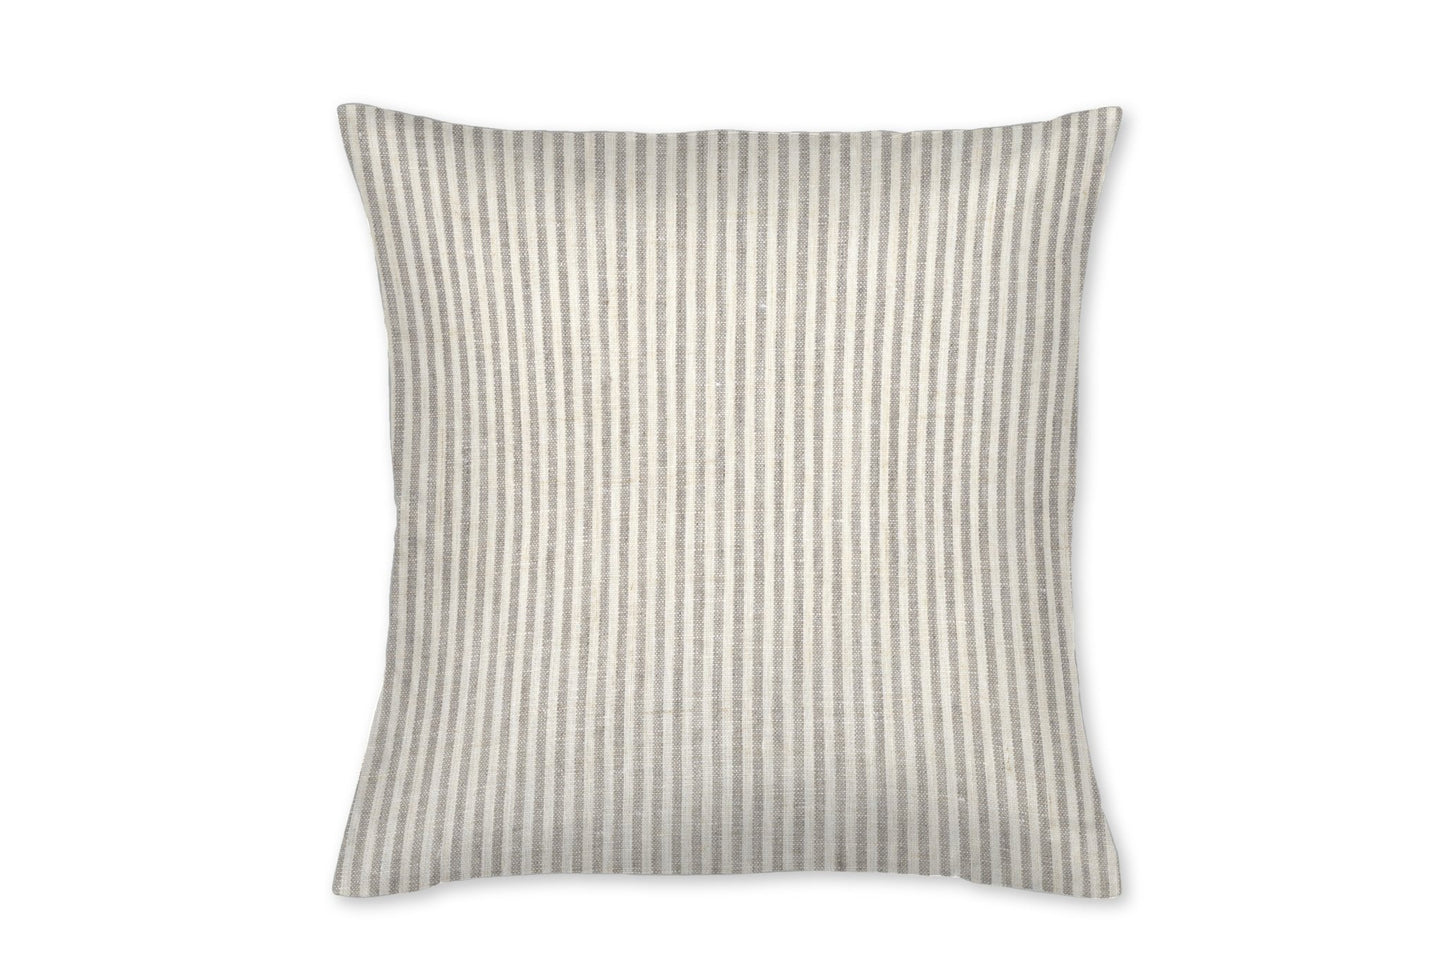 Kingston Ecru Stripe Linen Throw Pillow - New Arrivals Inc